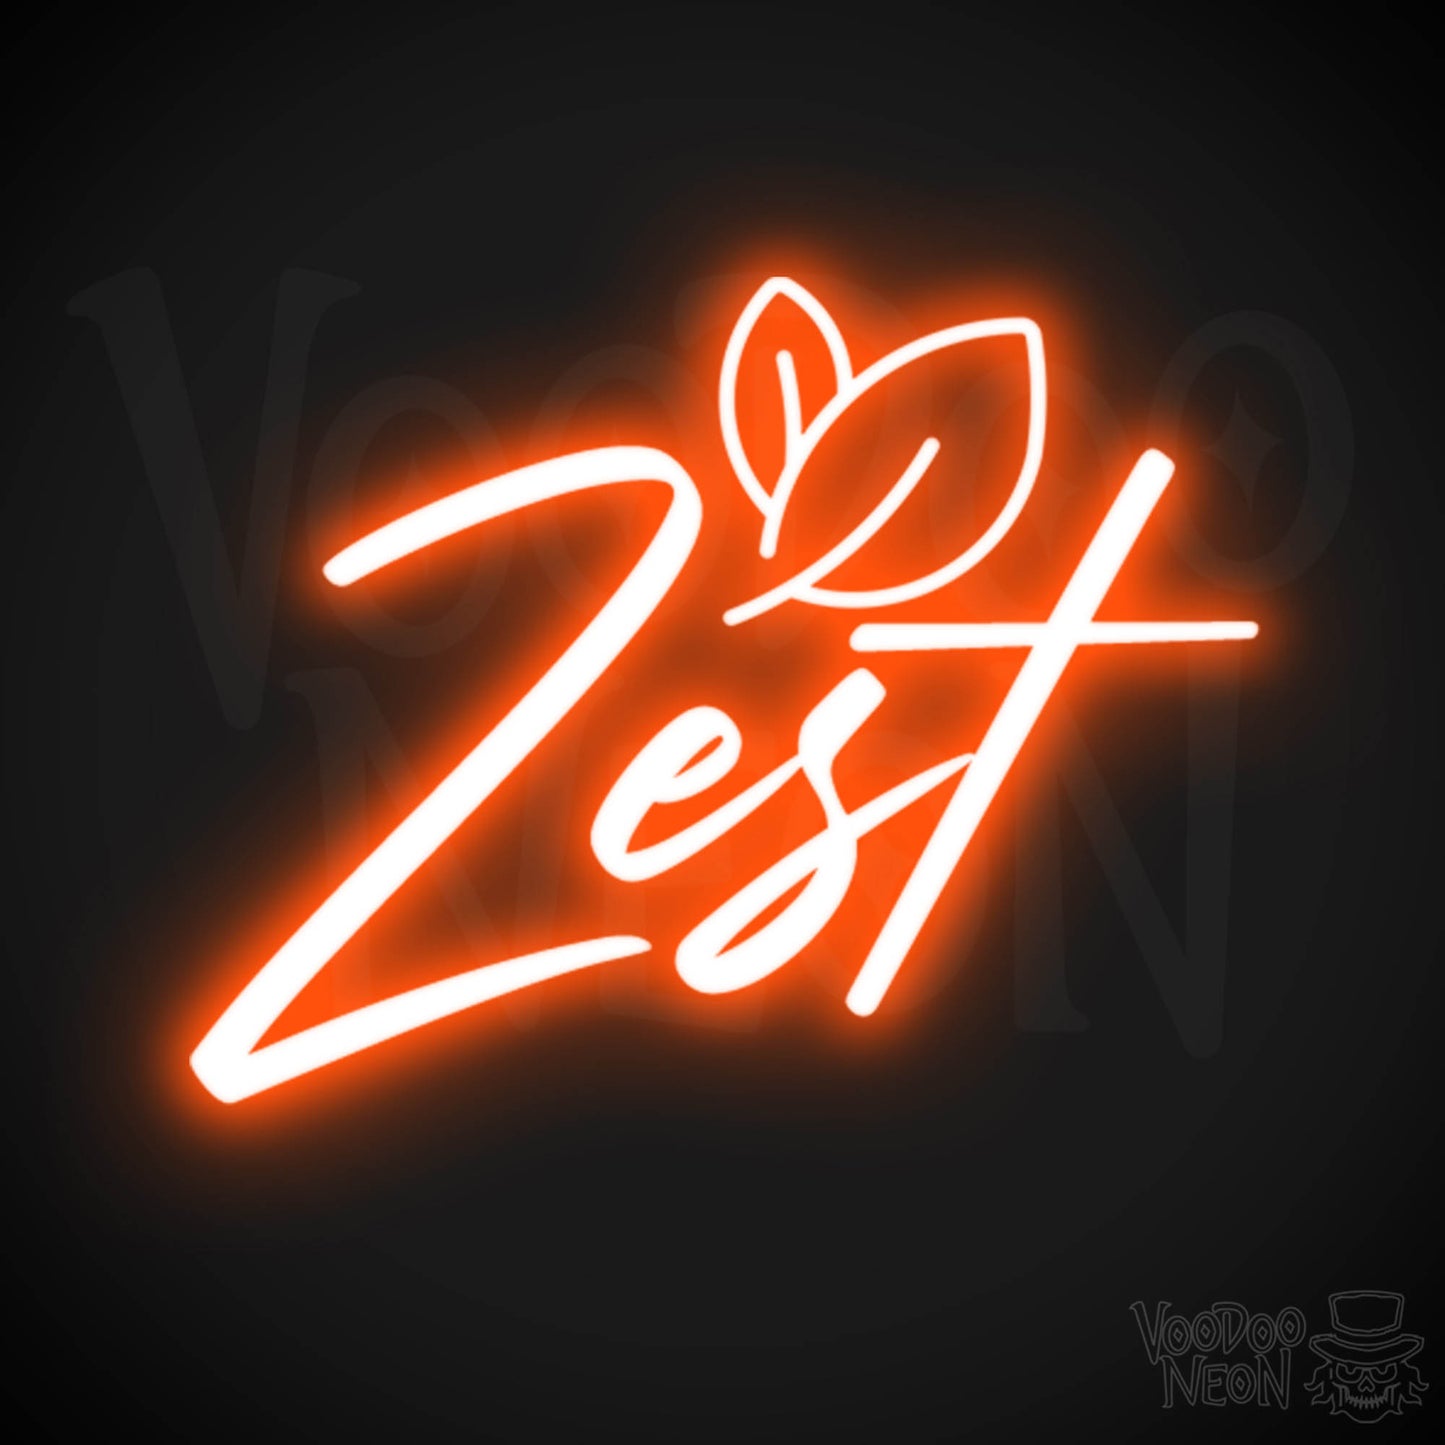 Zest Neon Sign - Neon Zest Sign - Color Orange